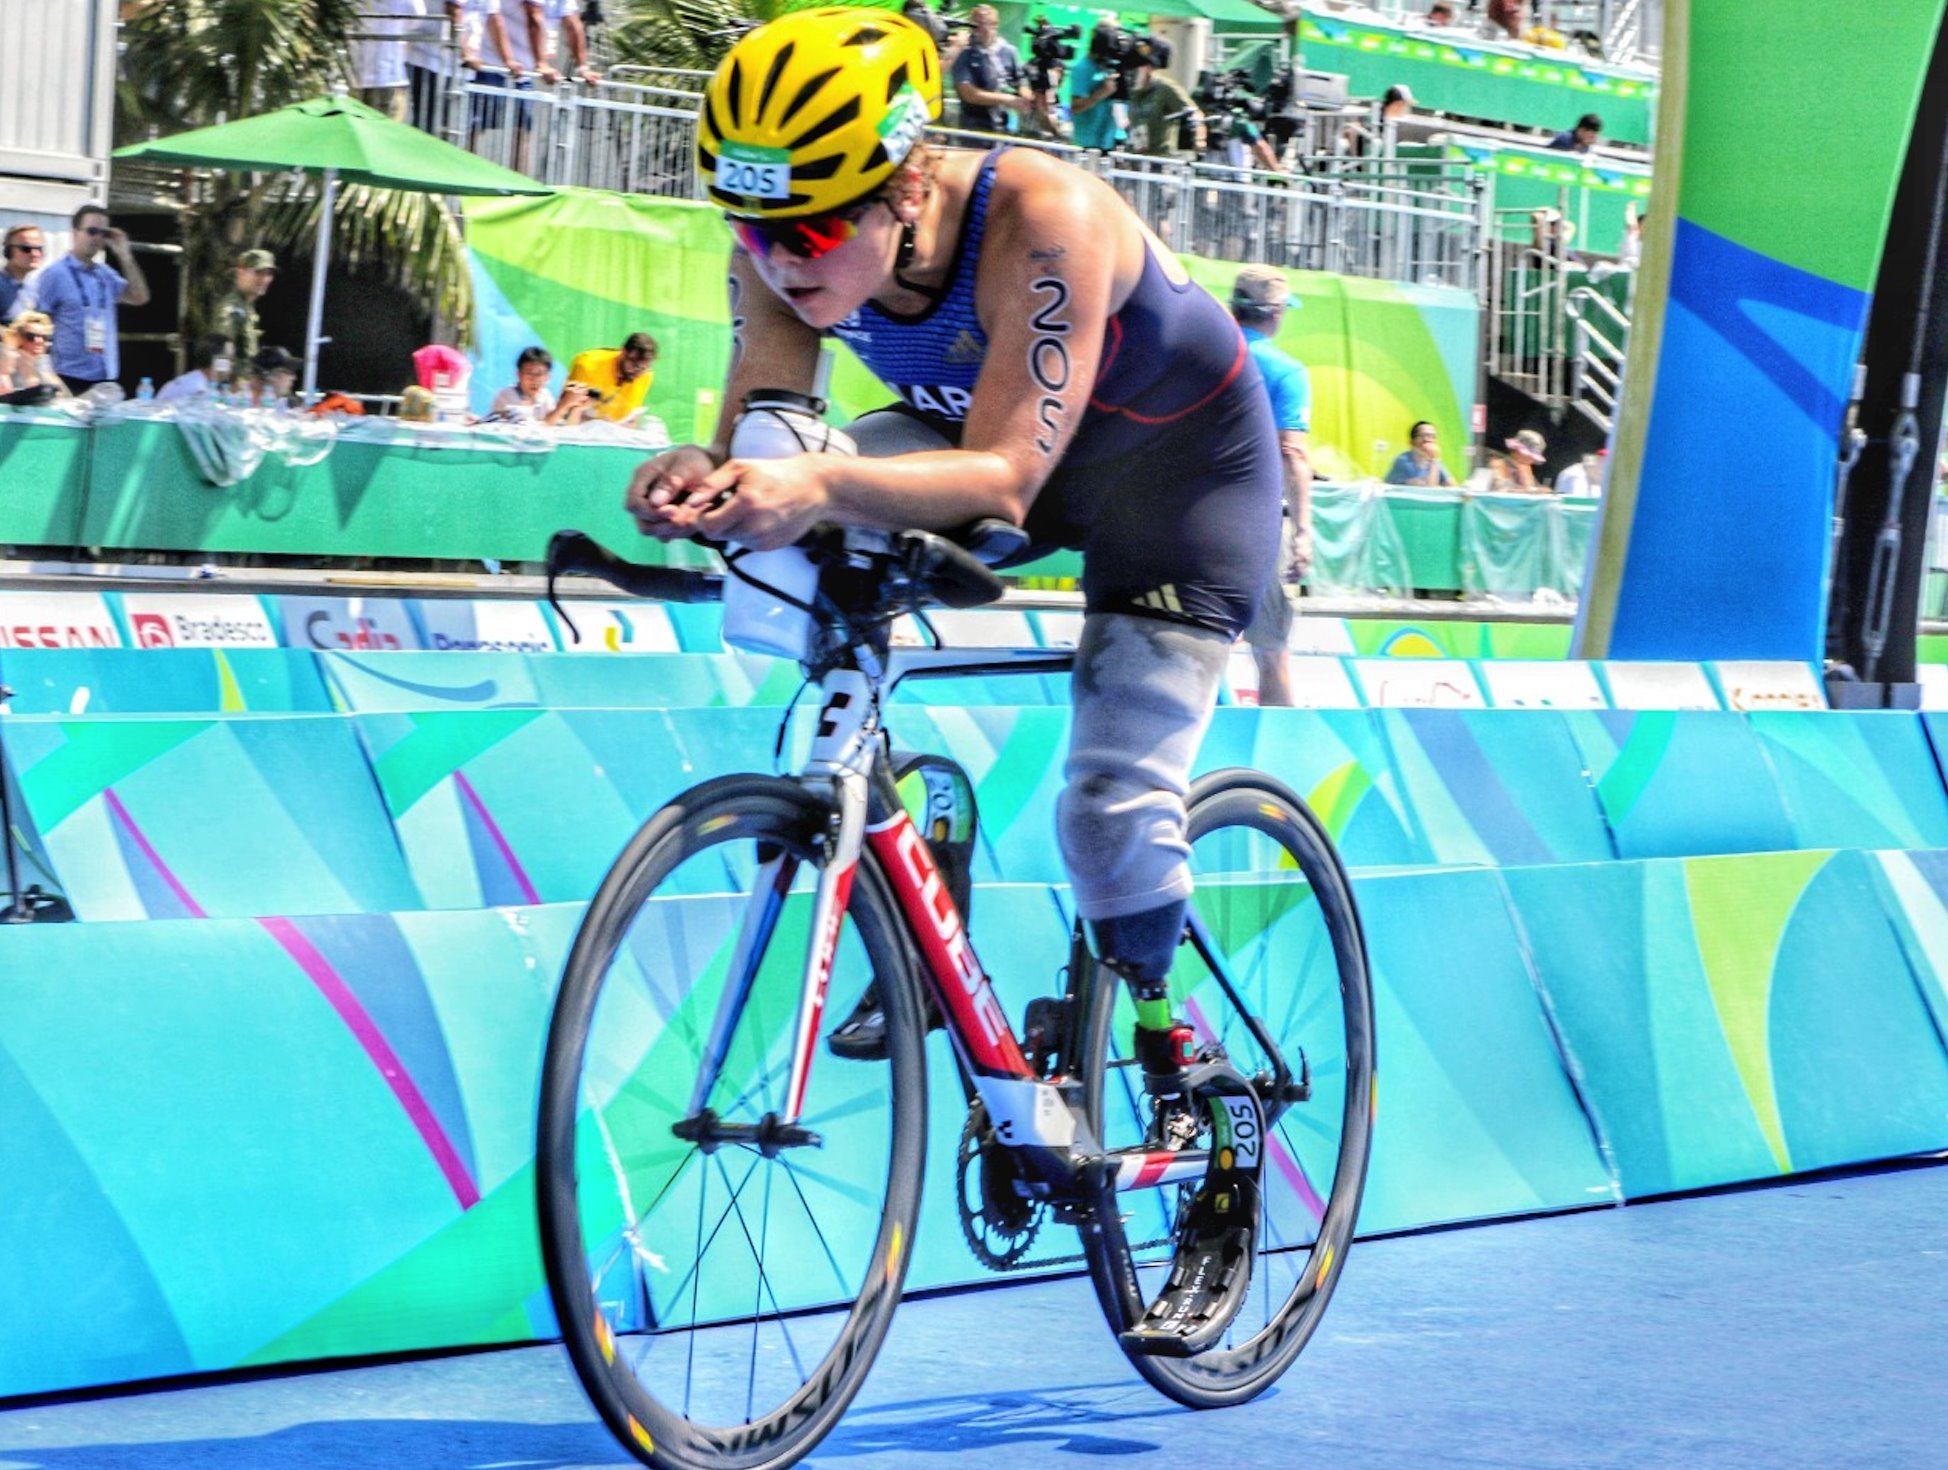 Atleta com deficiencia na perna corre prova de ciclismo nas Paralimpiadas de 2016